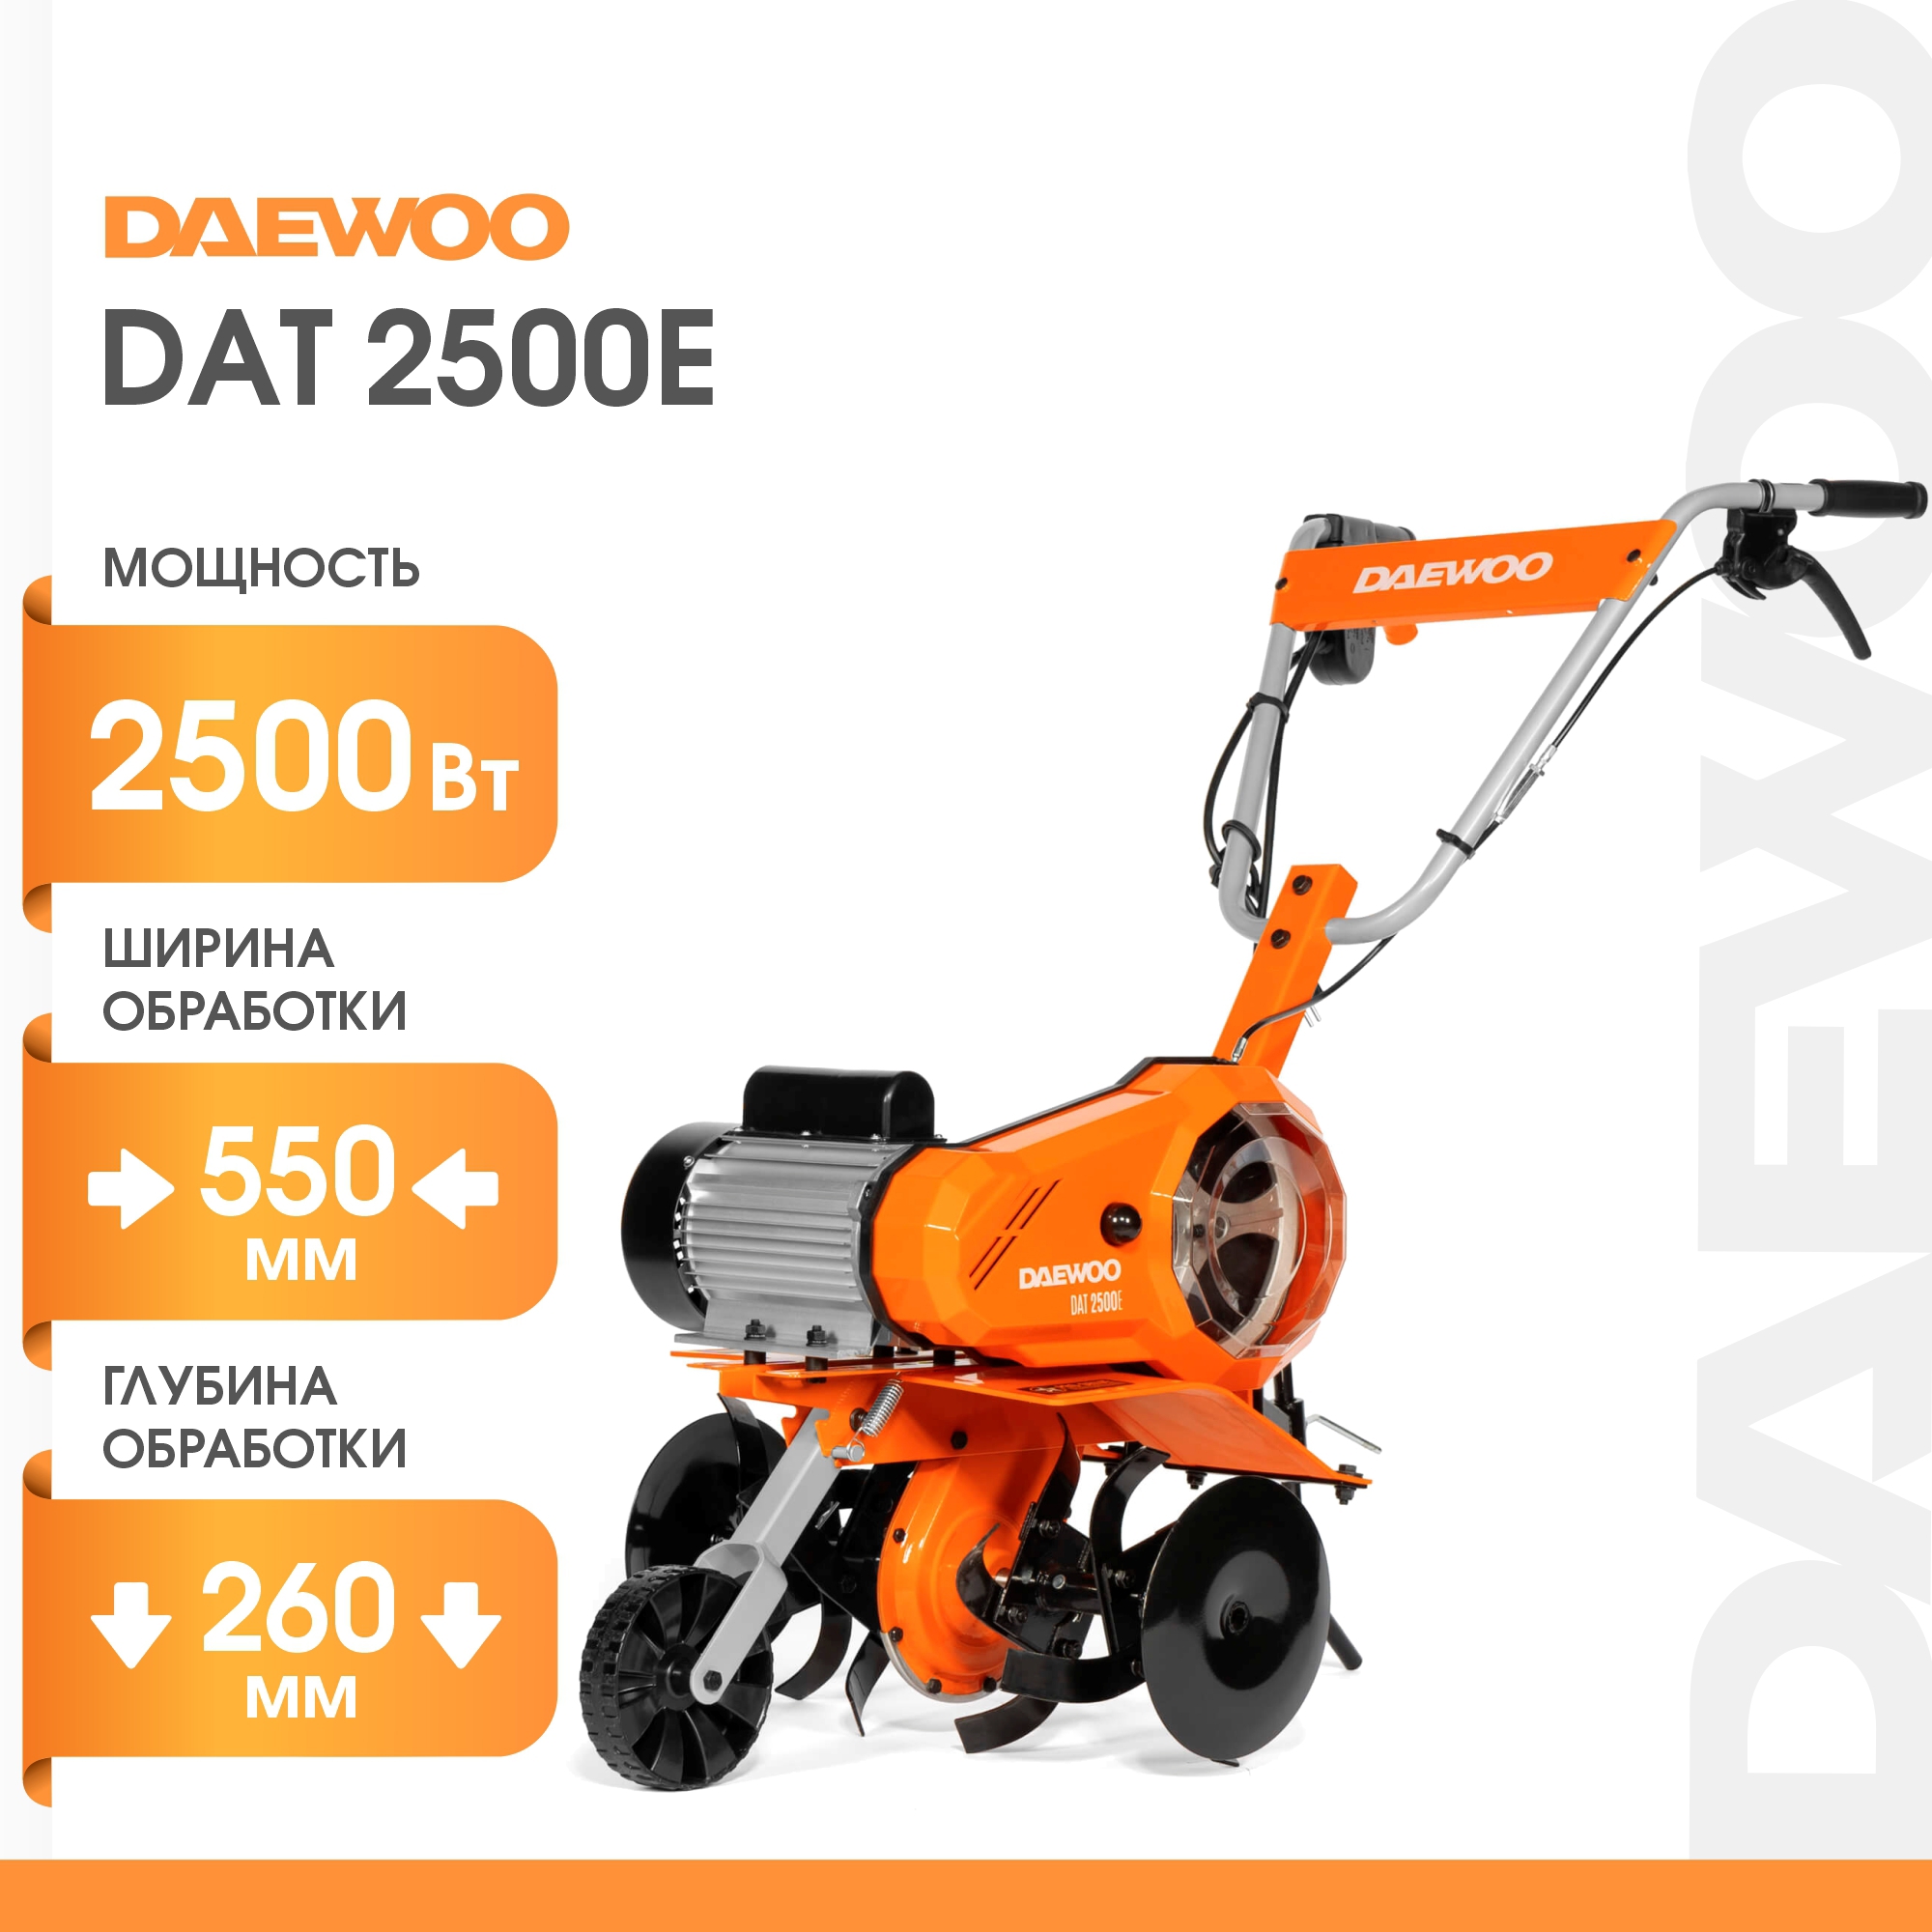  электрический Daewoo DAT 2500E, л/с 28 см ️  по цене .